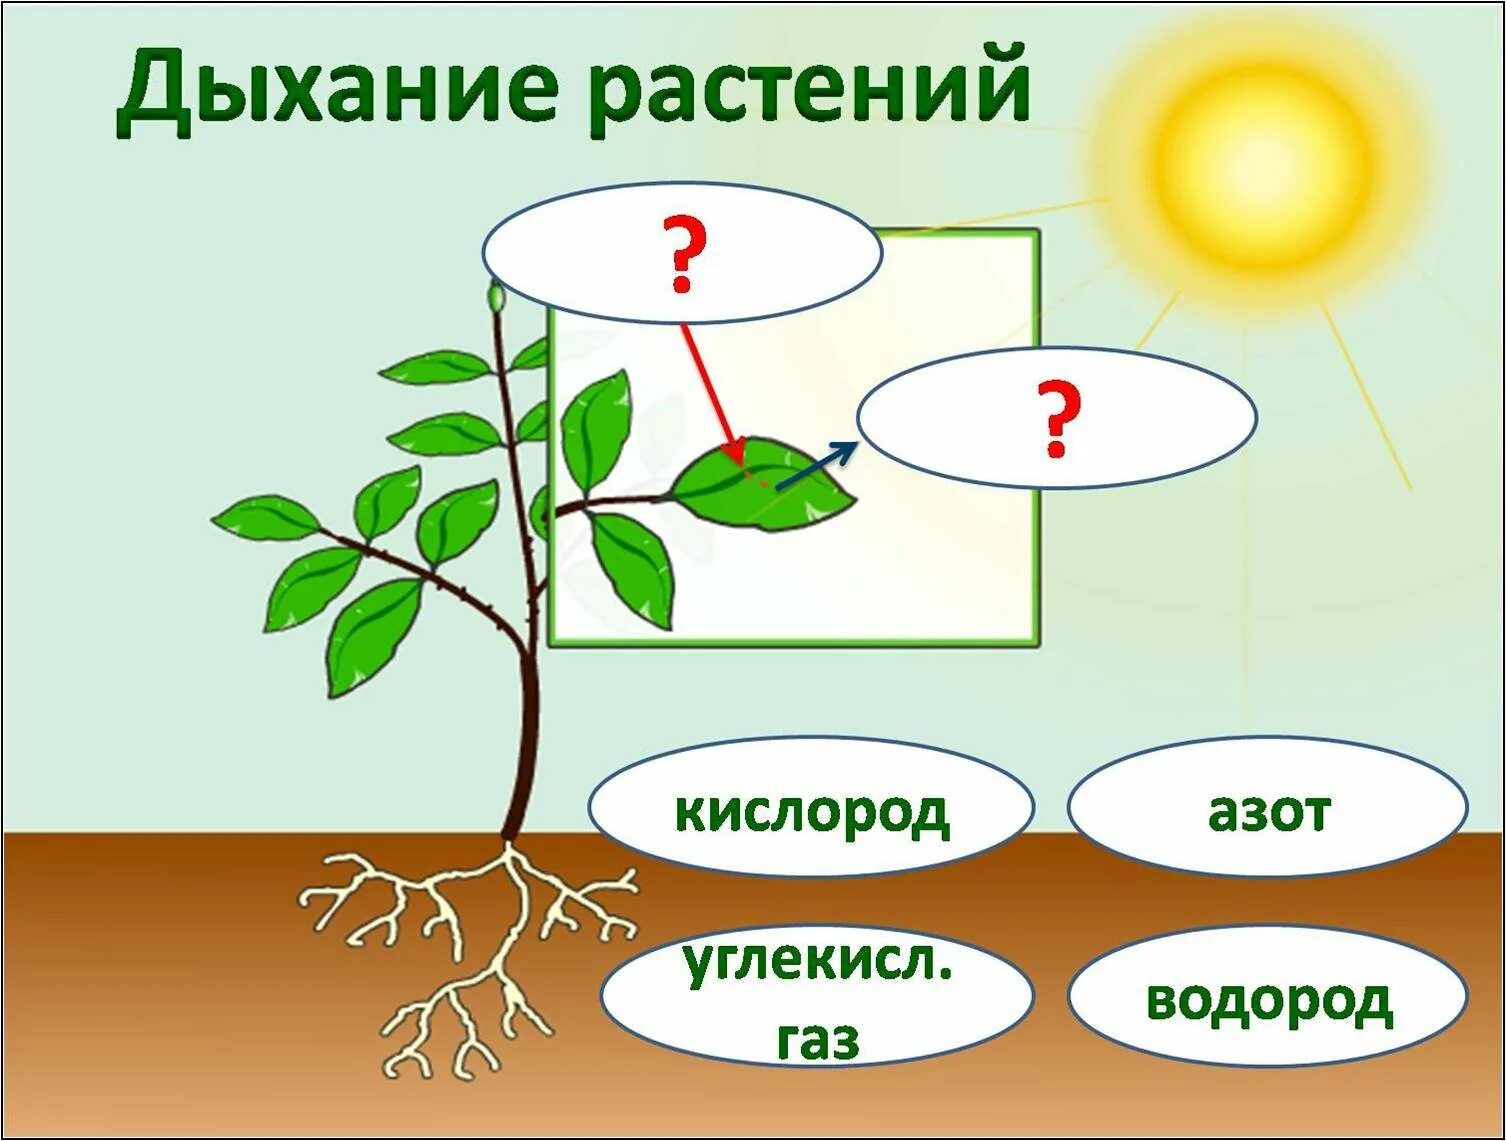 Дыхание растений. Растения дышат. Строение комнатного растения. Схема по растениям.